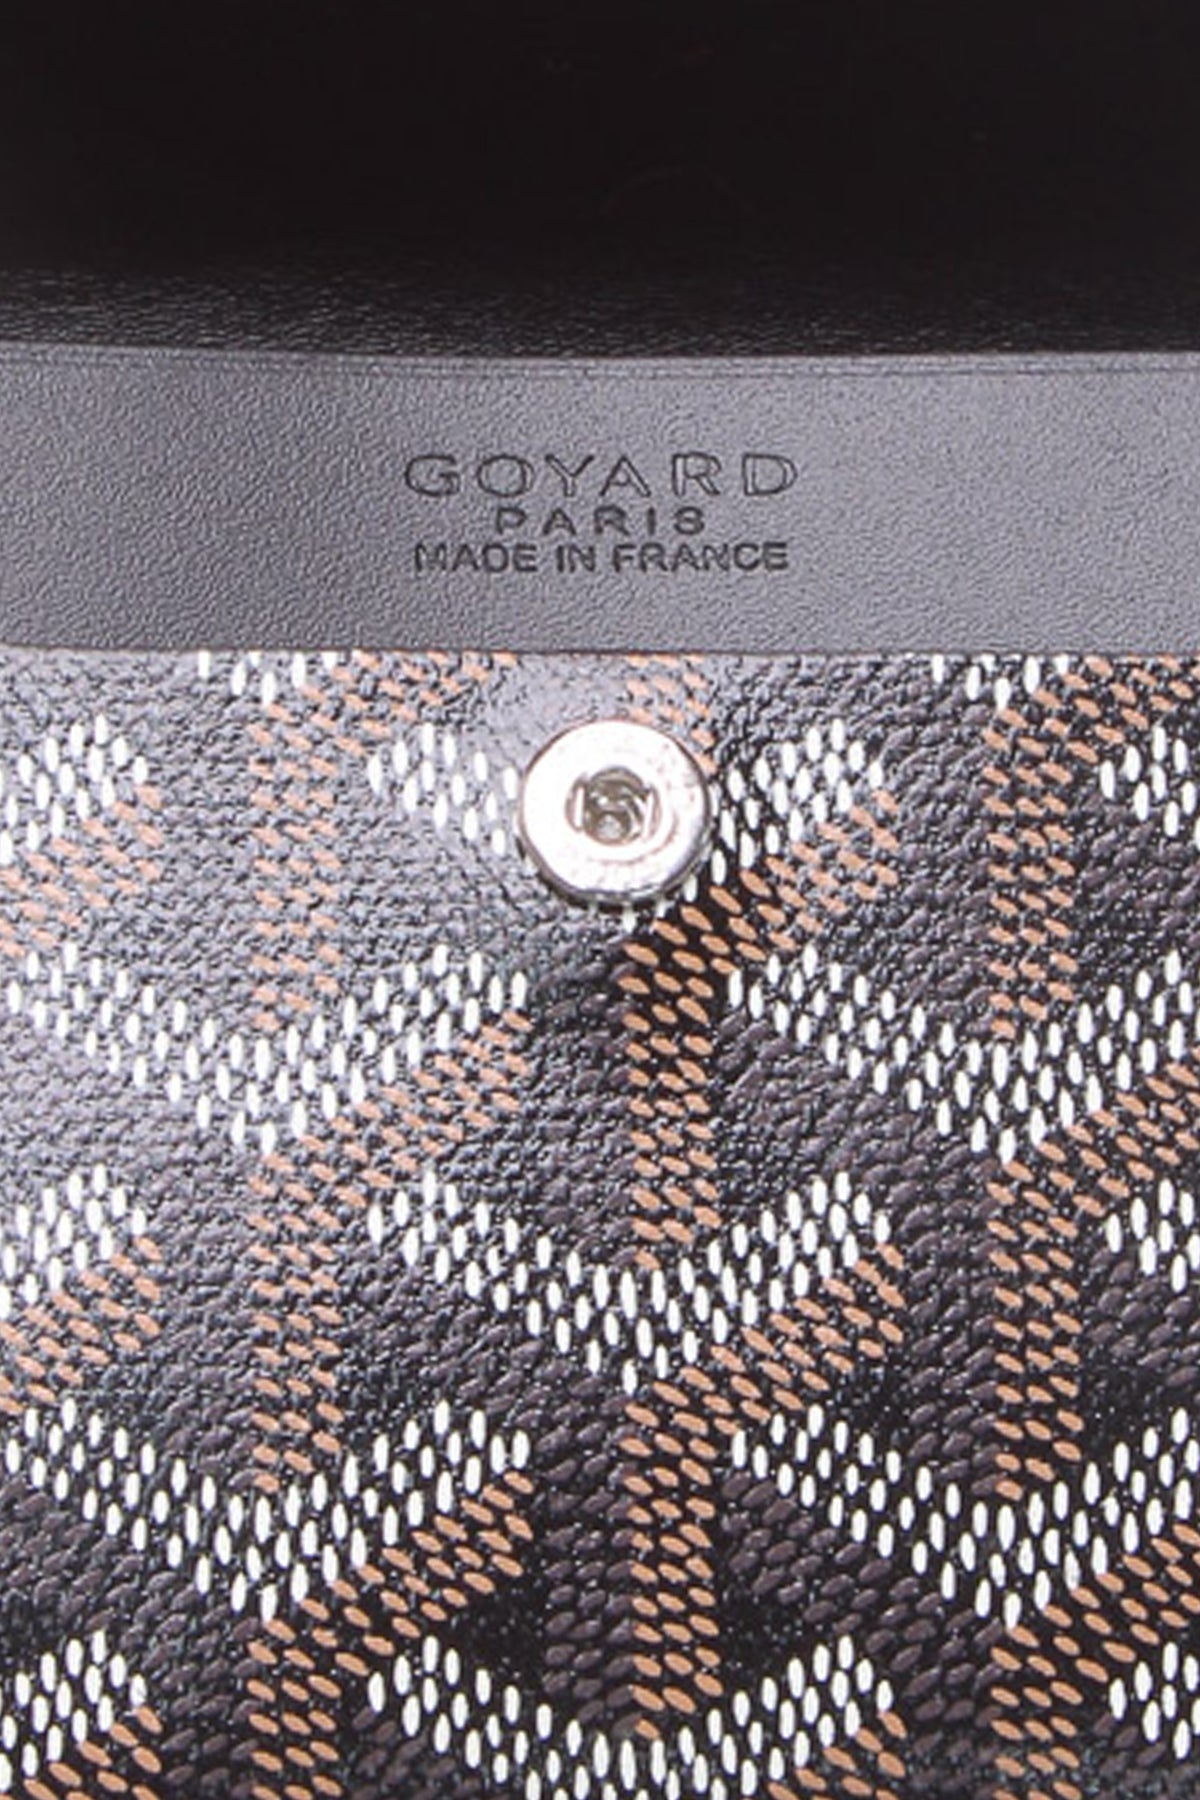 Goyard wallet  Goyard wallet, Goyard, Goyard bag